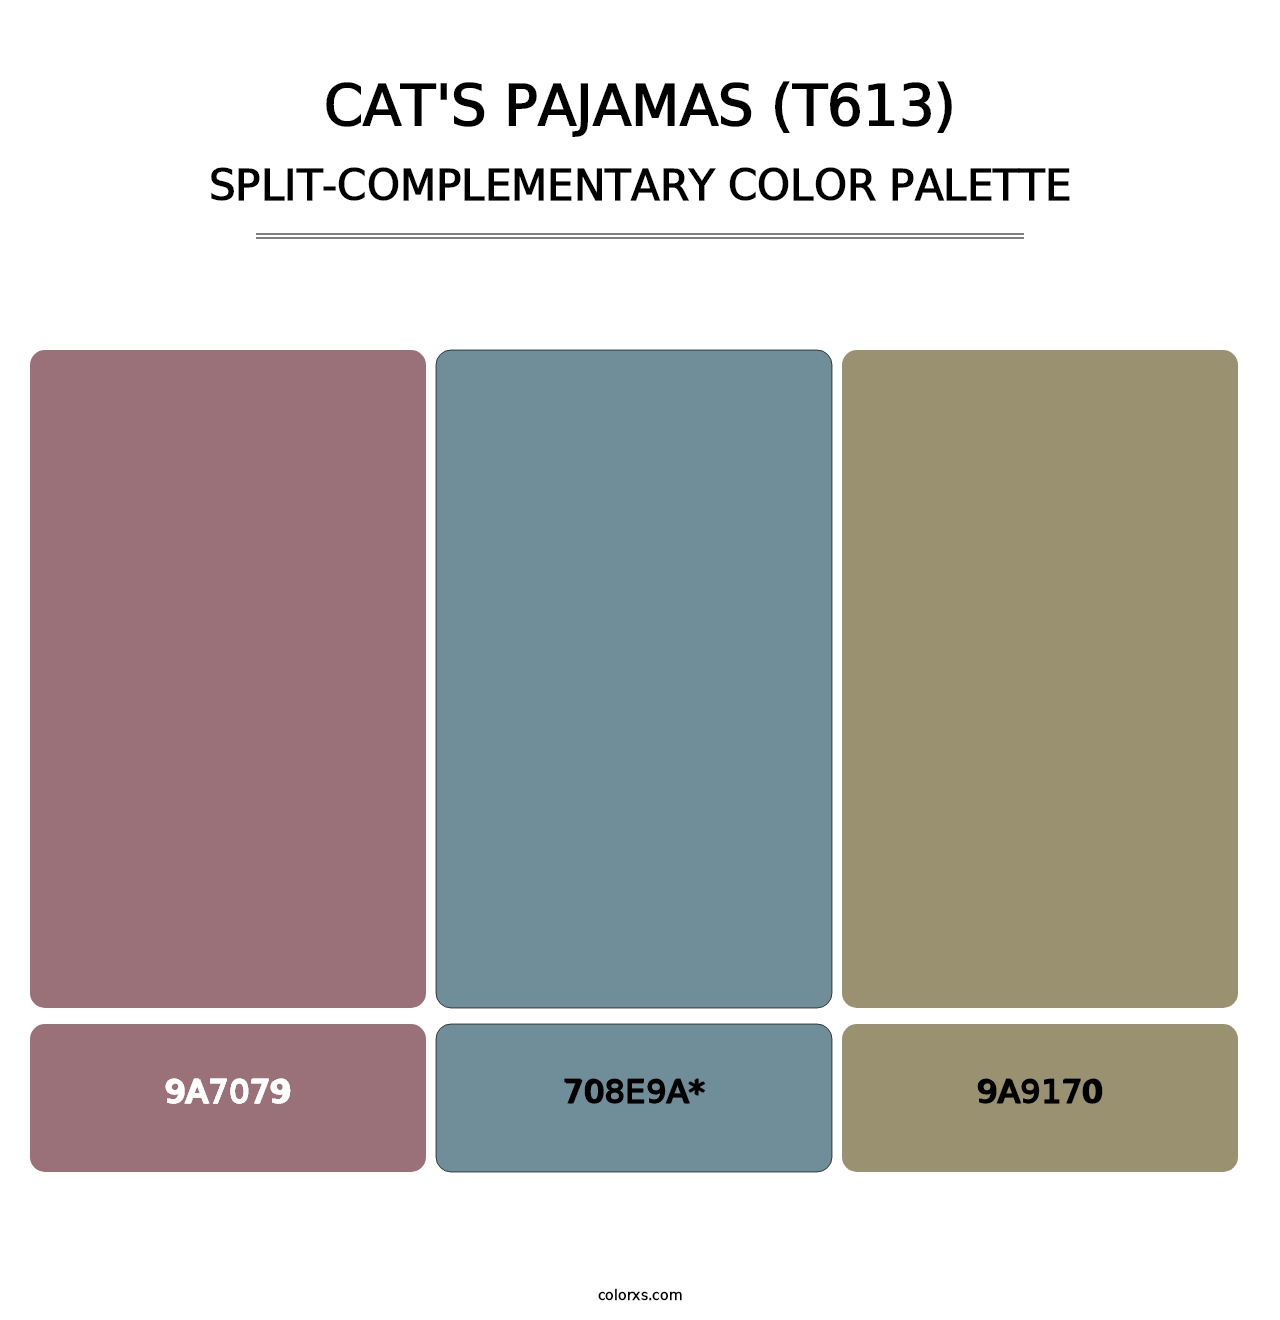 Cat's Pajamas (T613) - Split-Complementary Color Palette